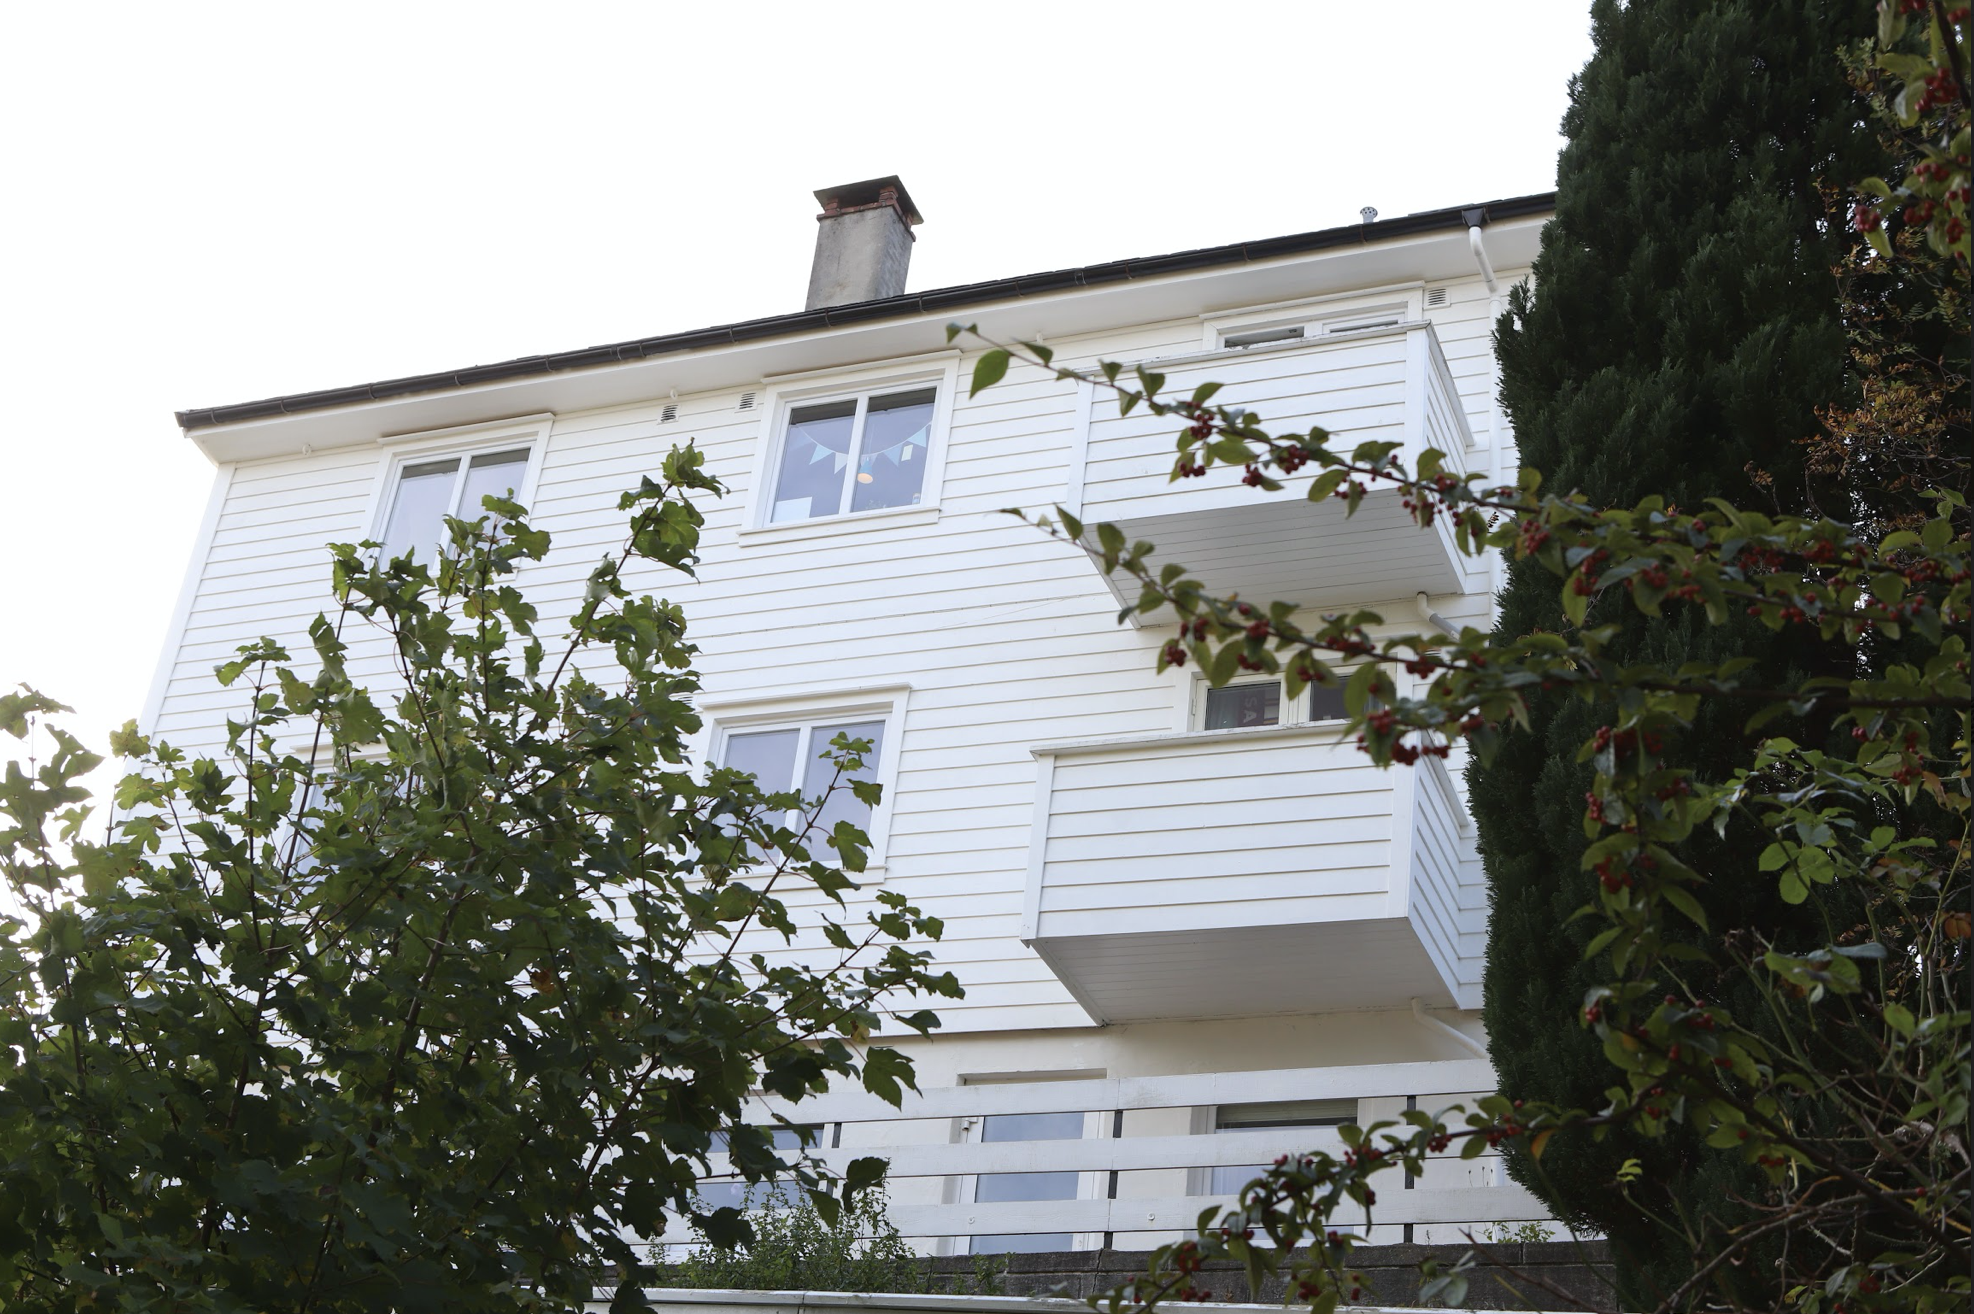 I en leilighet i denne boligen i Bergen ble kvinnen (20) funnet død. Hennes venn, en mann på 19 år, er siktet for drap. FOTO: Anton Vu / Foto NHHS